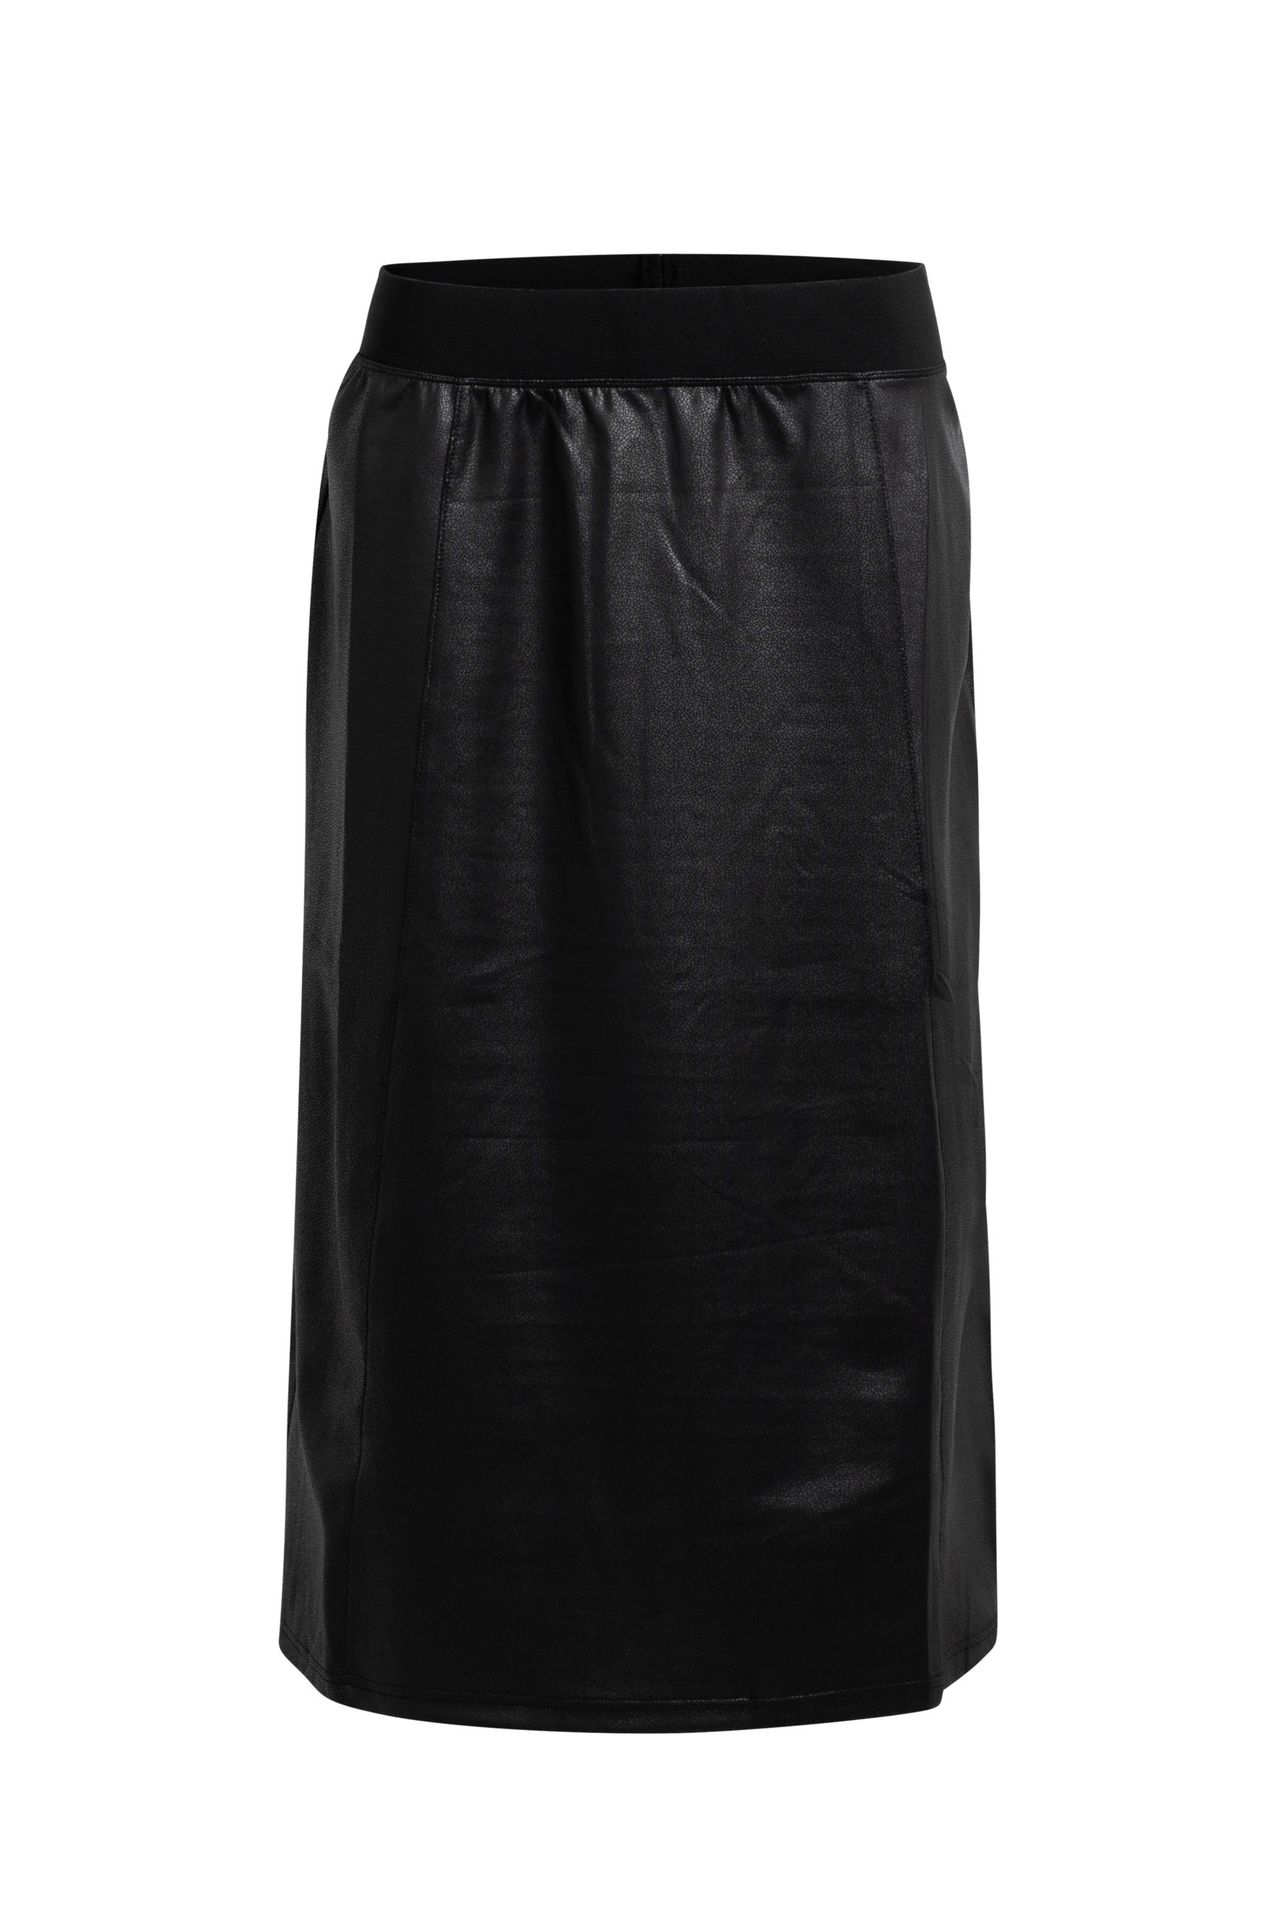 Norah Skirt, N3421 black 210776-001